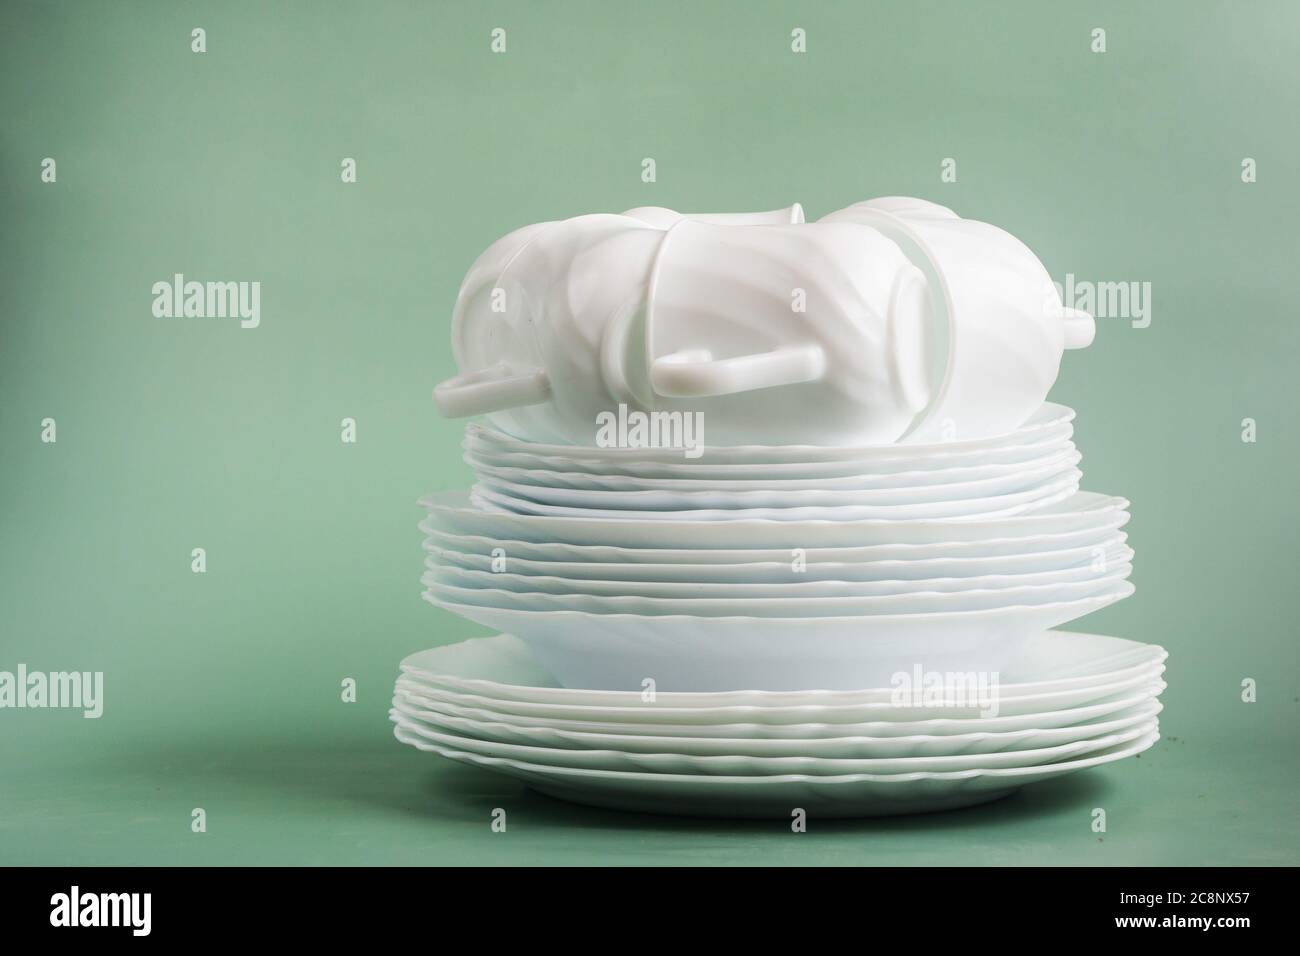 table de plats en porcelaine blanche sur fond vert Banque D'Images